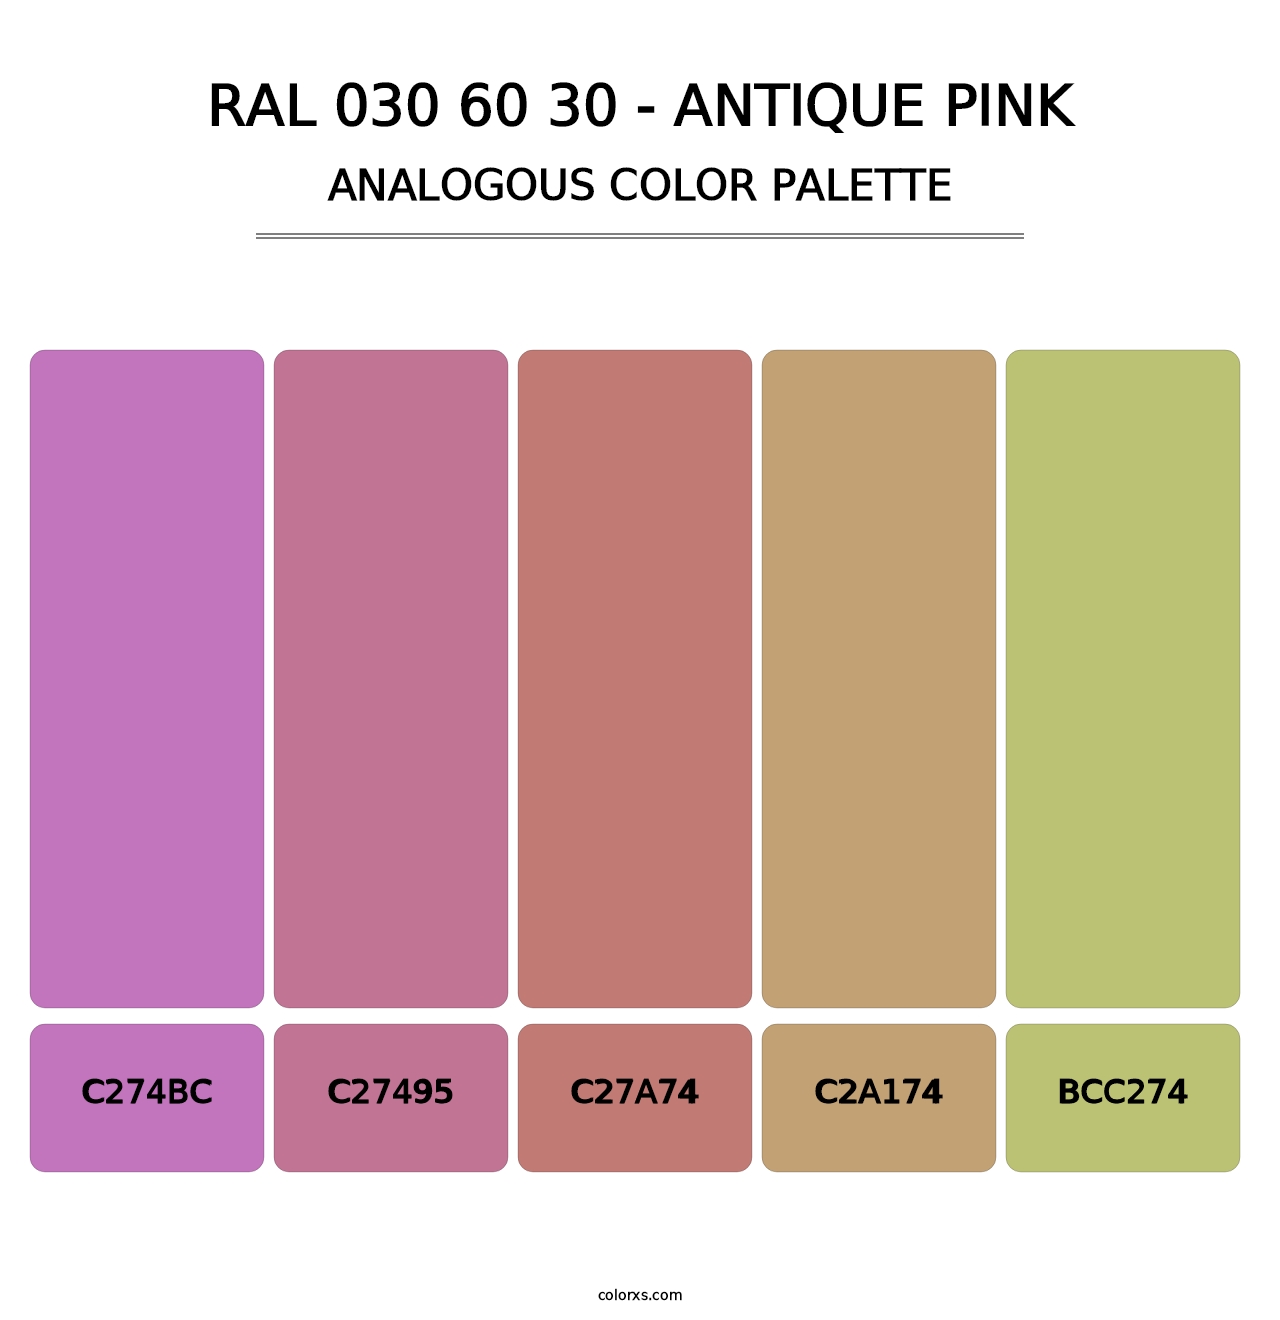 RAL 030 60 30 - Antique Pink - Analogous Color Palette